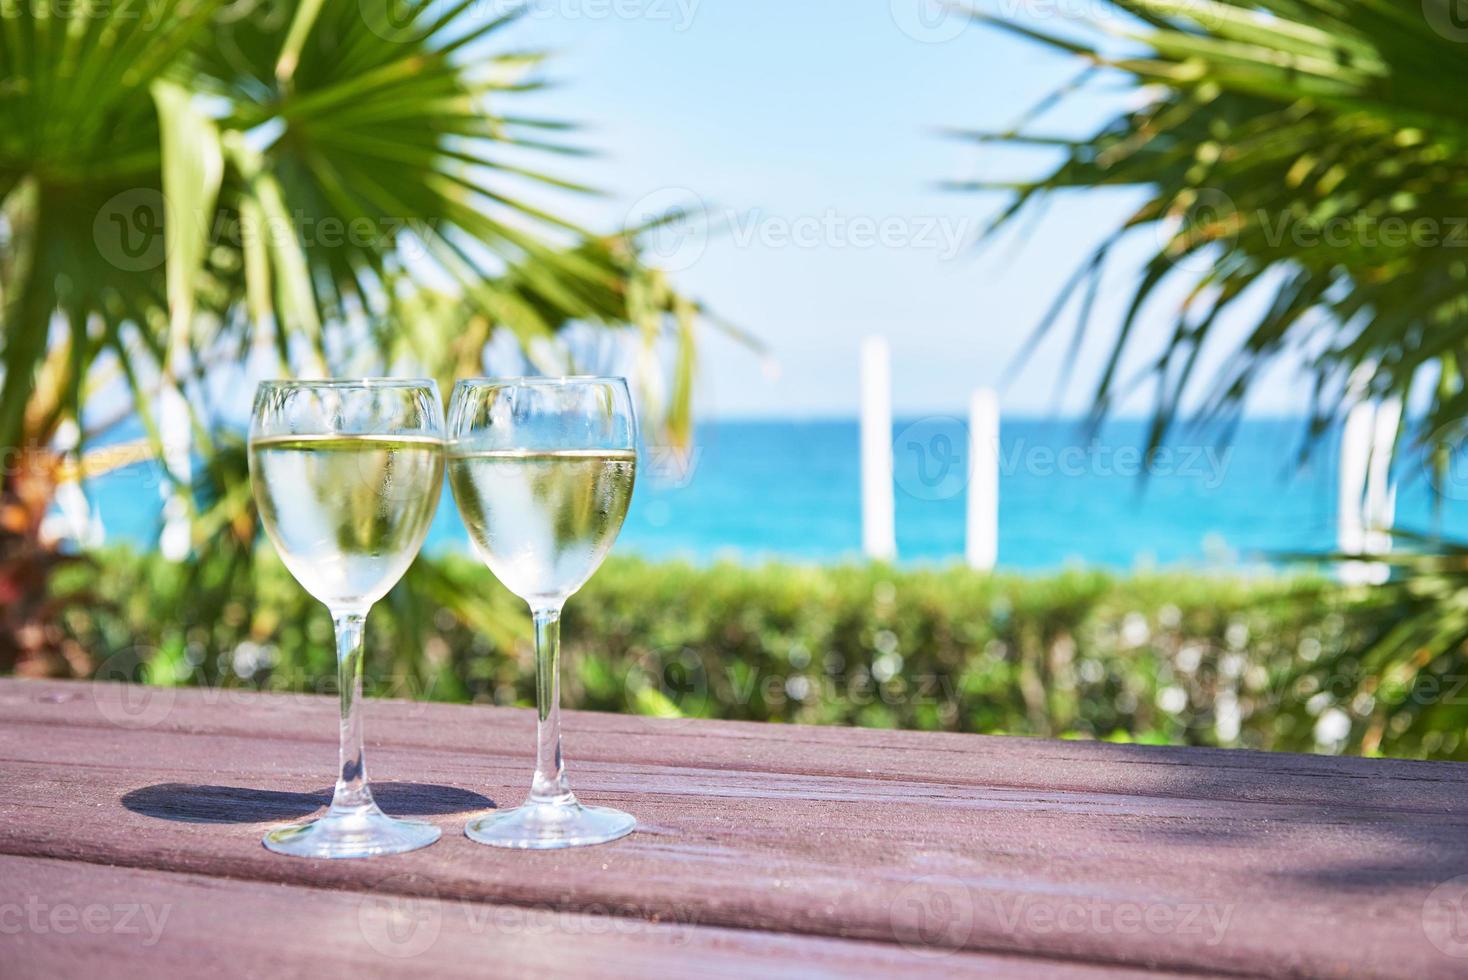 glazen champagne bij een resortzwembad in een luxehotel. feest bij het zwembad. drinken in een glas gieten. amara dolce vita luxe hotel. toevlucht. tekirova-kemer foto